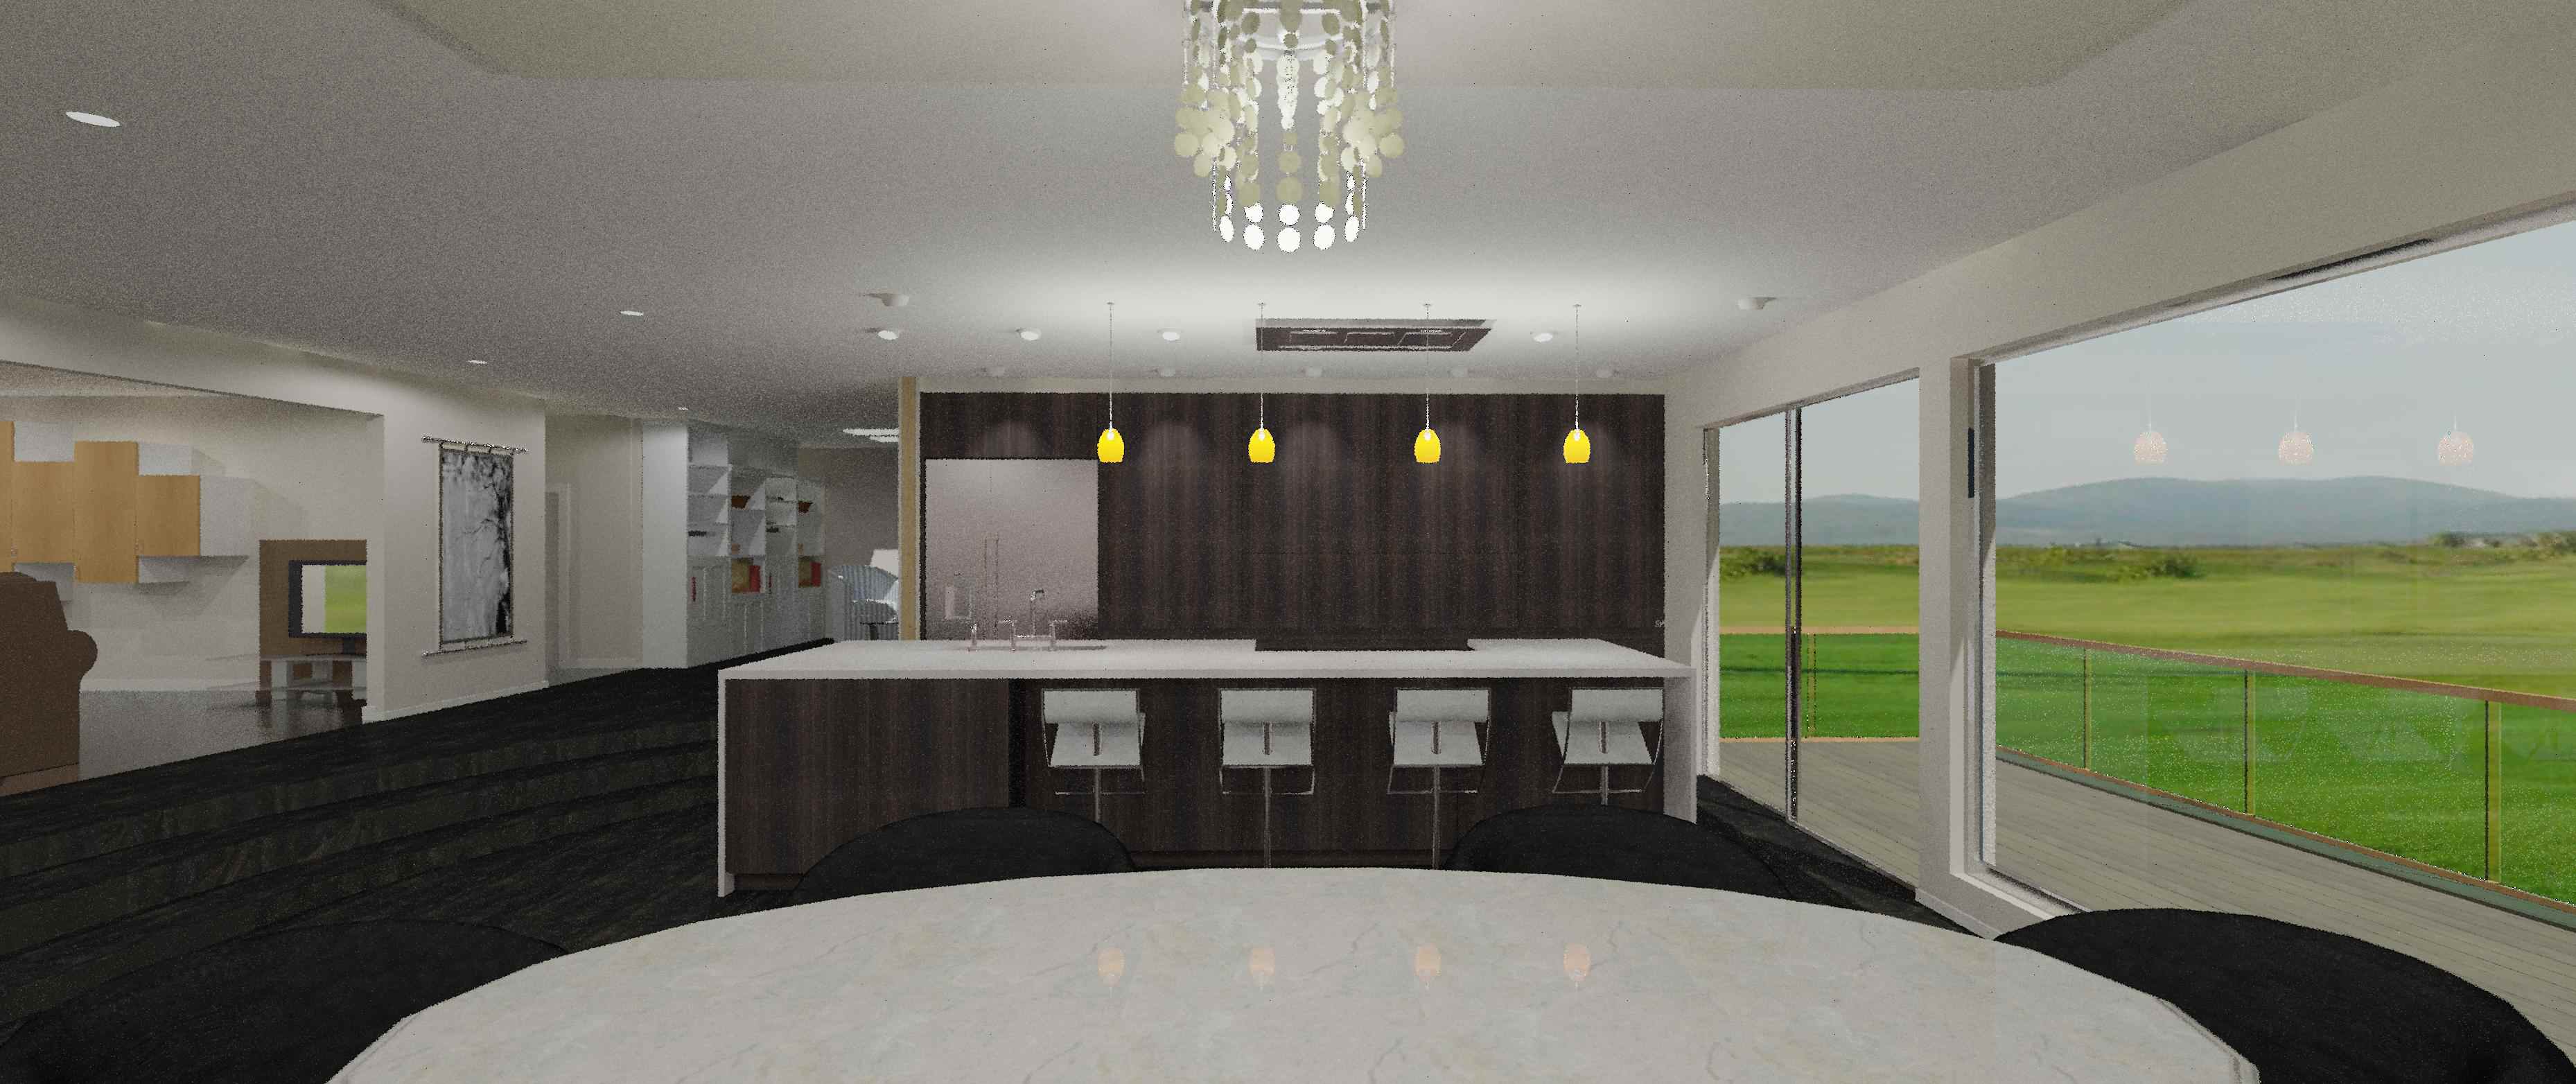 3d design for Kitchen Design & Remodel - Oakland Hills, CA